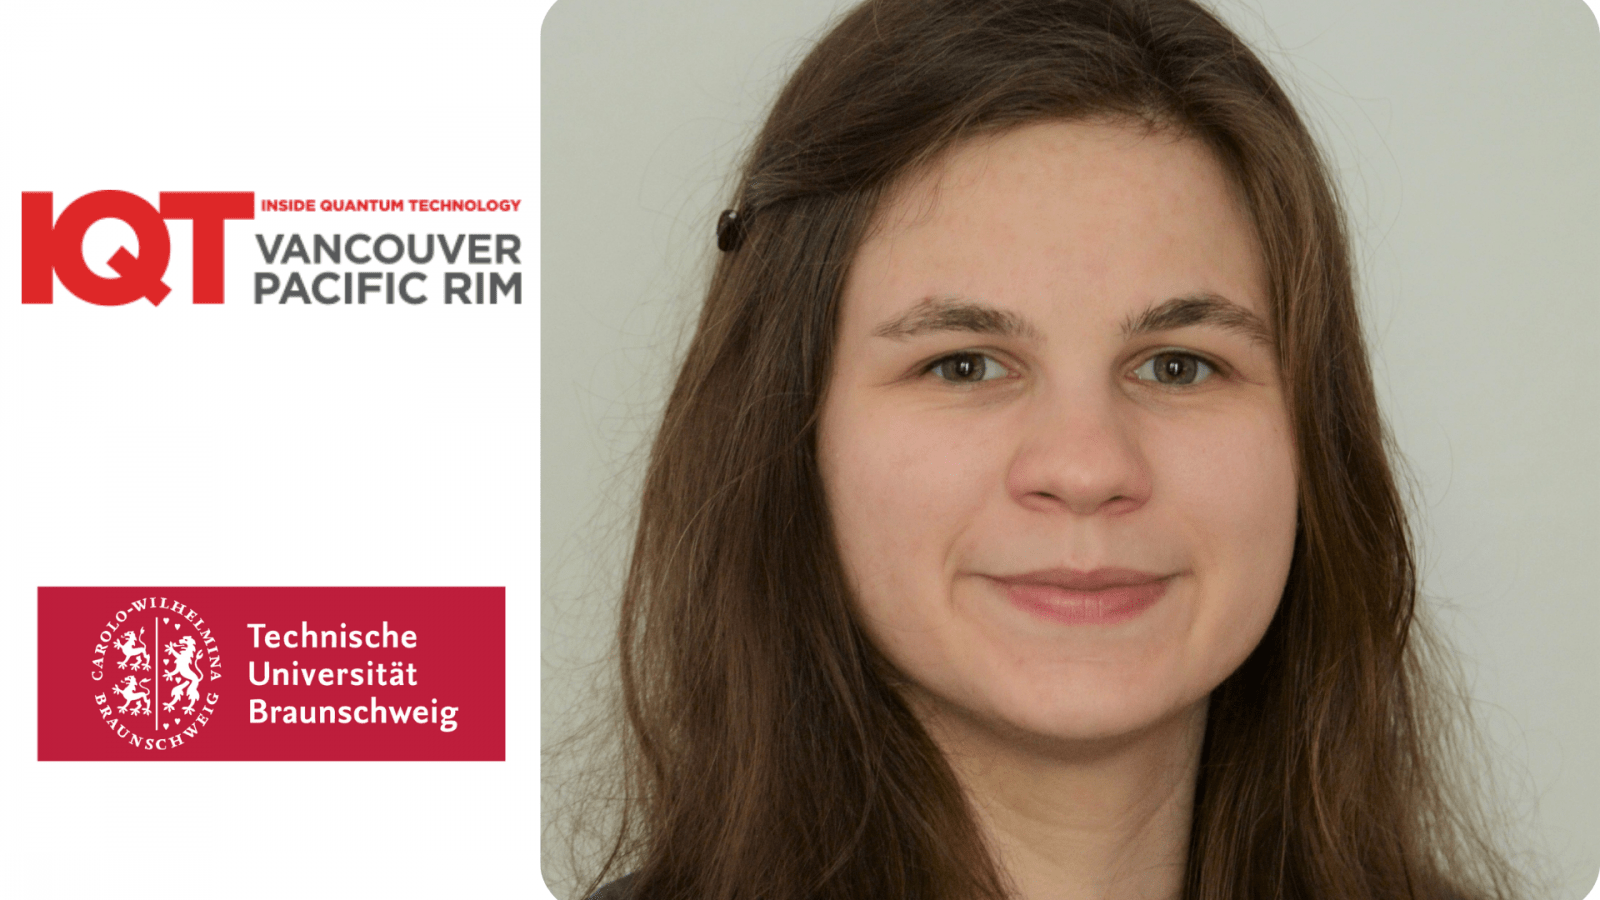 Actualización de IQT Vancouver/Pacific Rim: Franziska Greinert, asistente de investigación de la Universidad Técnica de Braunschweig, es oradora de 2024 - Inside Quantum Technology